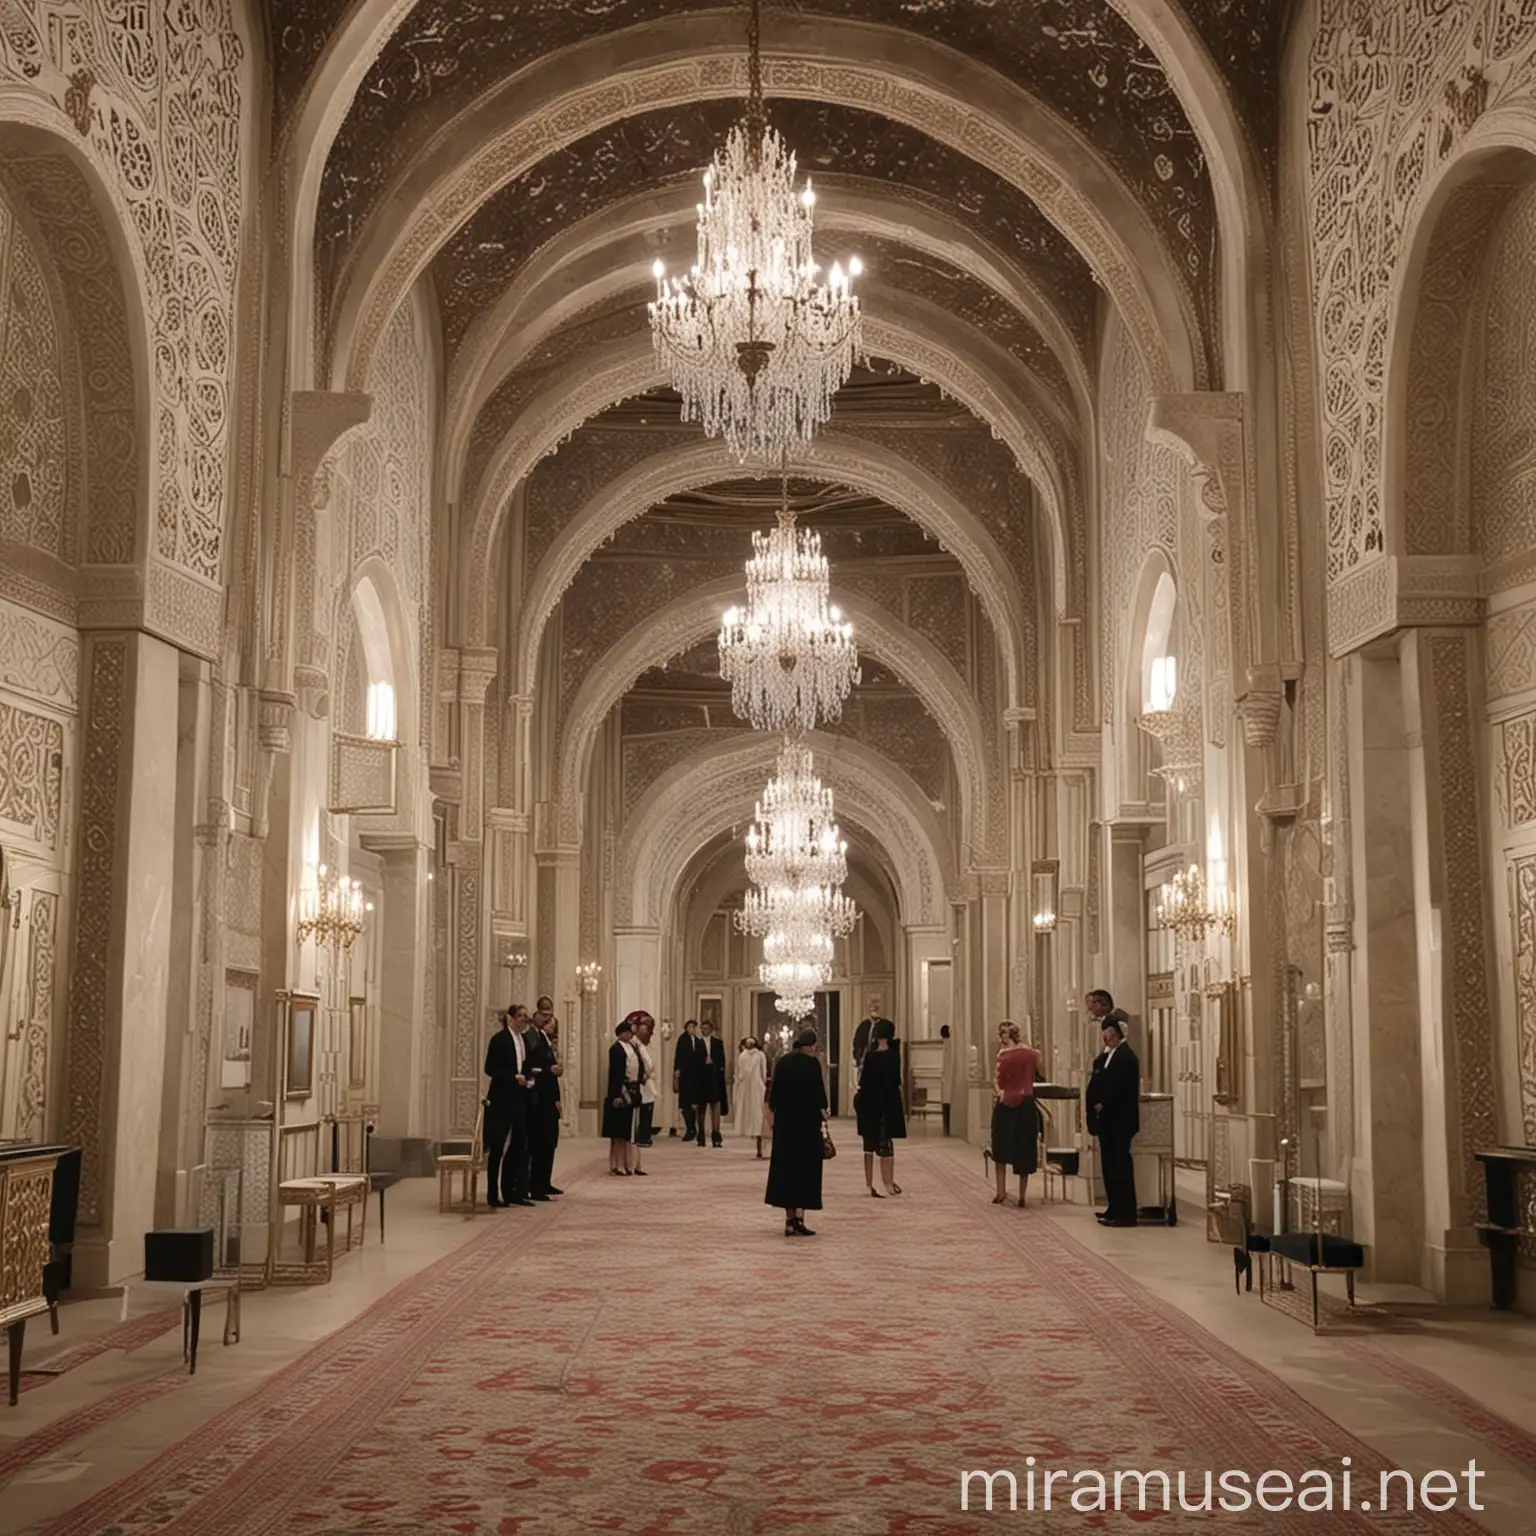  Teasers, vidéos en coulisses, interviews de designers, posts sur l'histoire du palais de la Mahkama du Pacha de Casablanca et les détails de la collection entre Chanel et Cartier